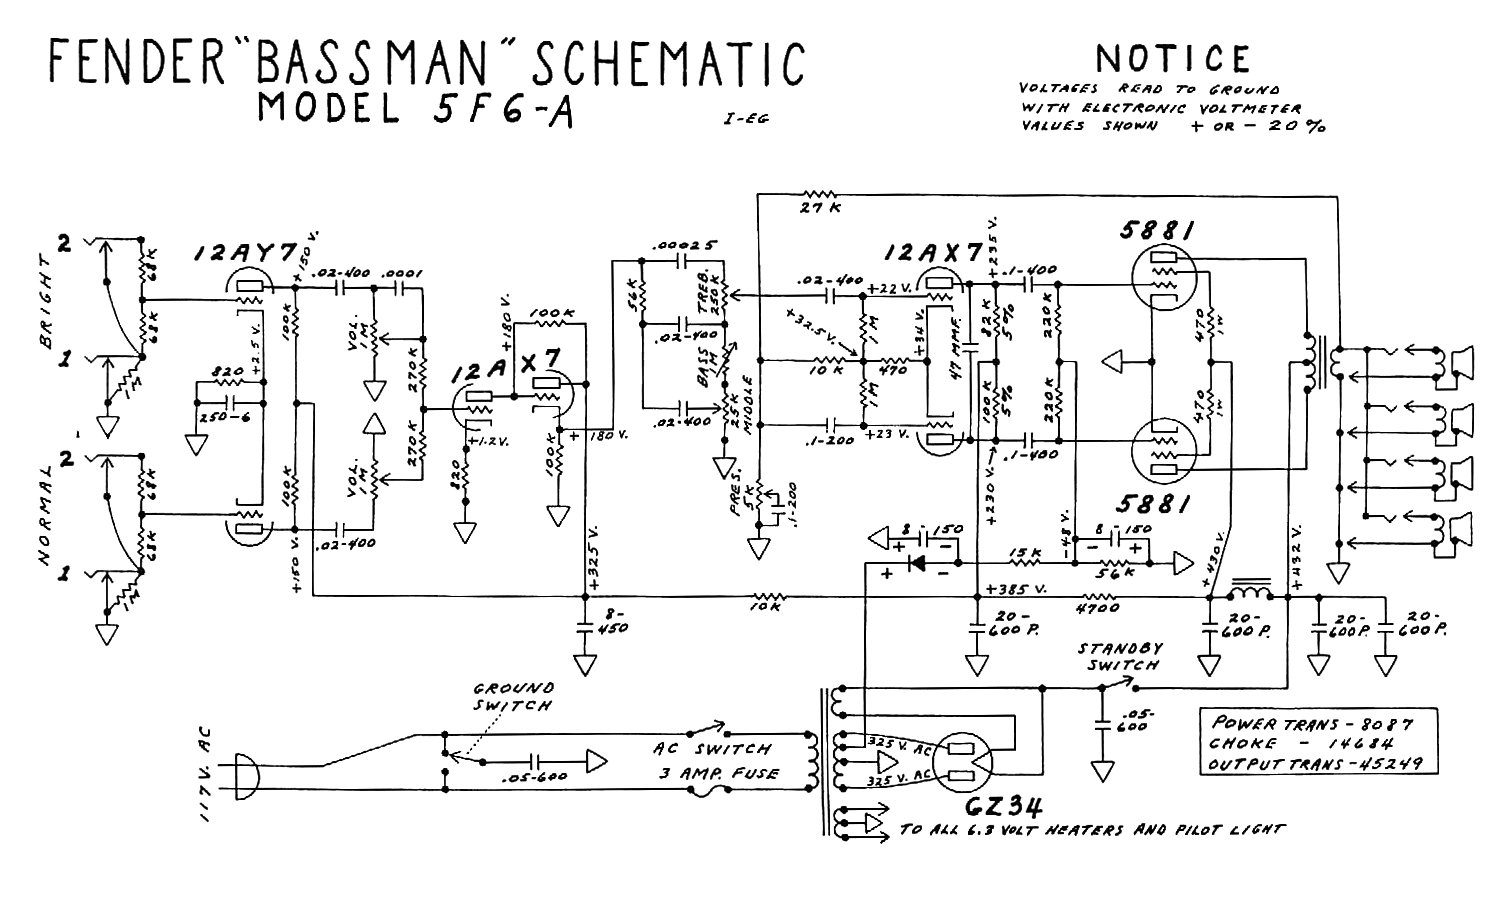 bassman-5f6-a-schematic.gif